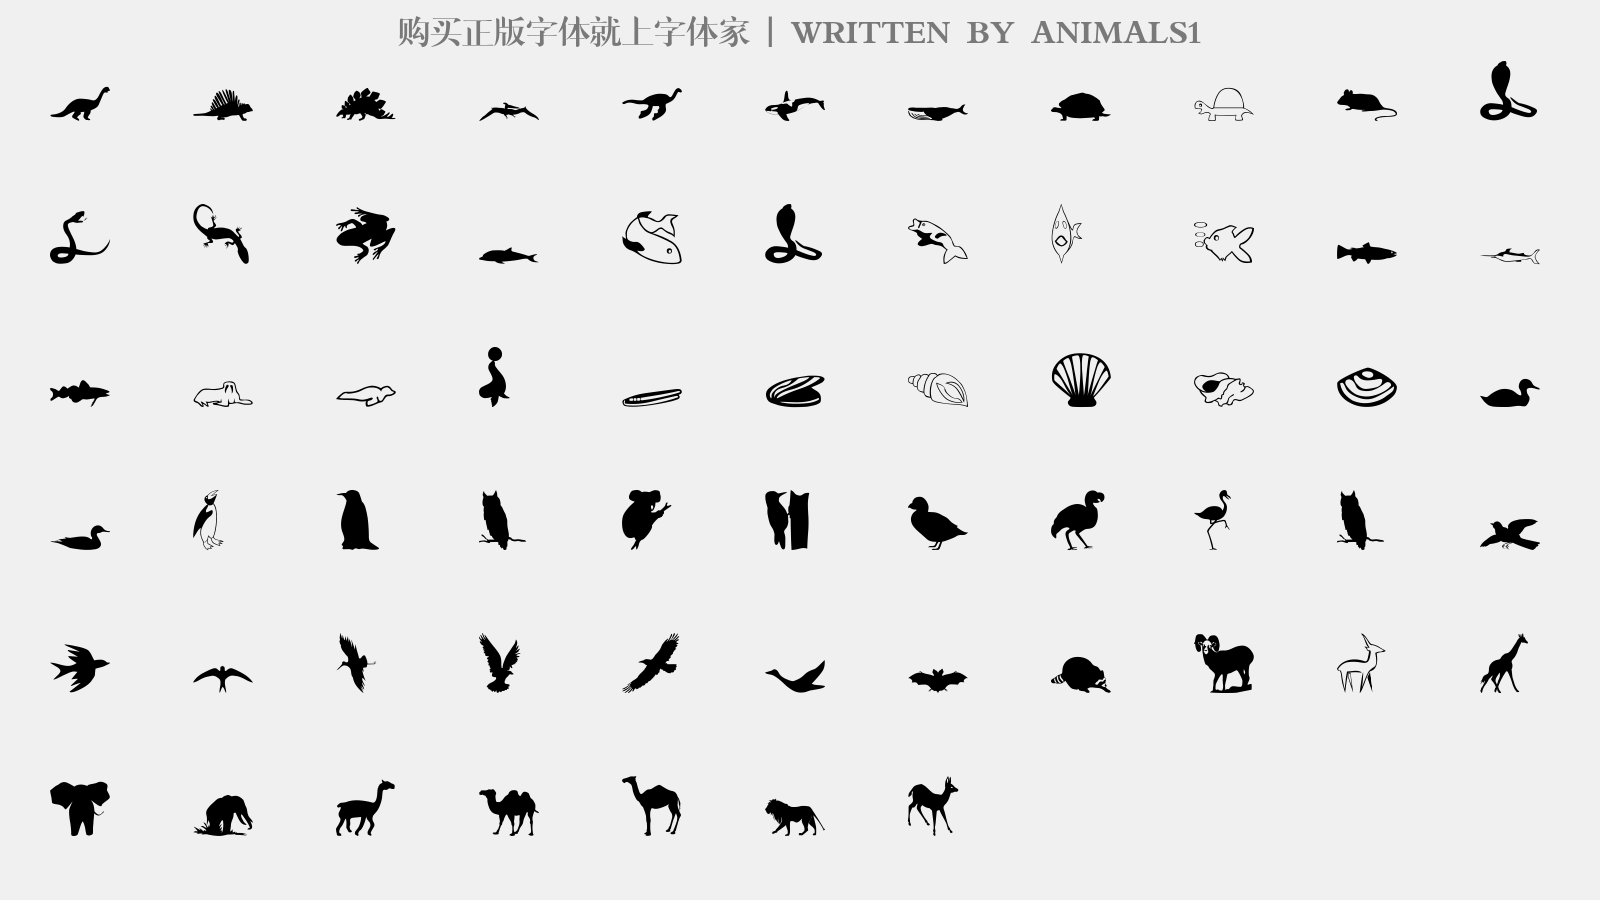 ANIMALS1 - 大写字母/小写字母/数字